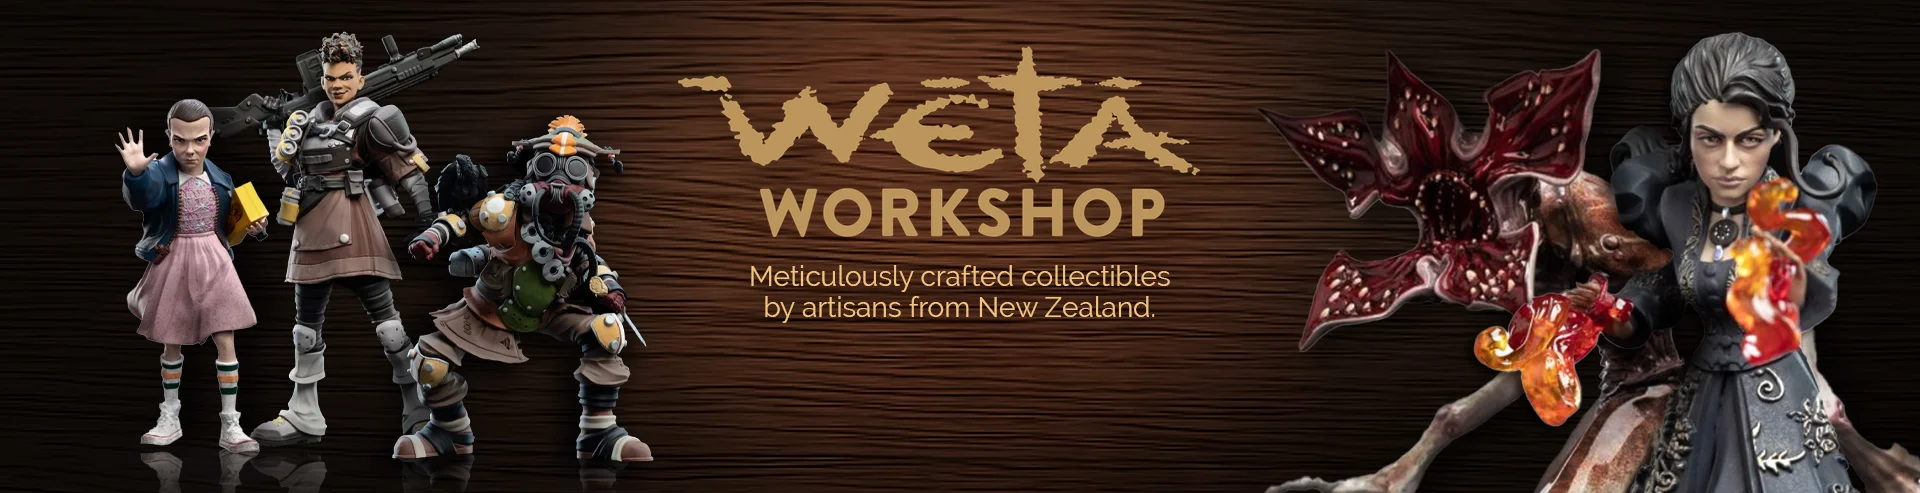 VM-Hero-Weta Workshop-1920x493.webp